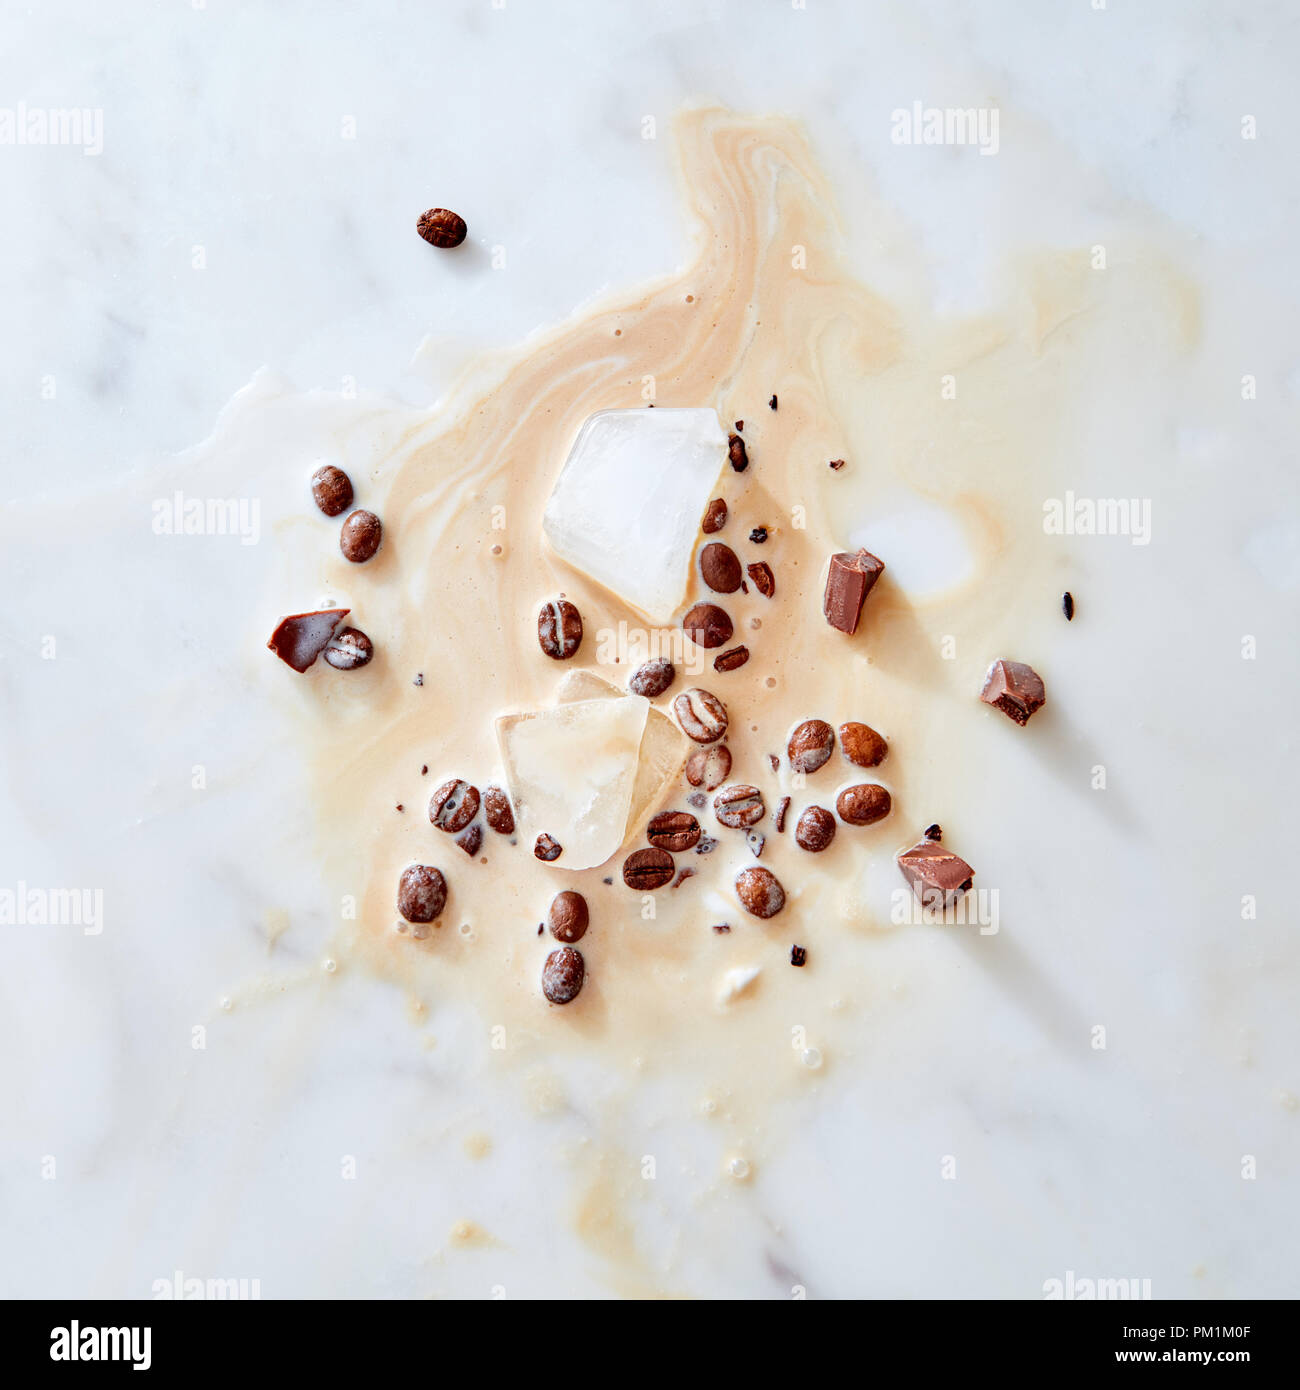 Ein Muster von Spritzern von Kaffee mit Milch Stücke Schokolade, Eis und Kaffee Körner auf grauem Marmor Hintergrund mit Platz für Text. Flach Stockfoto